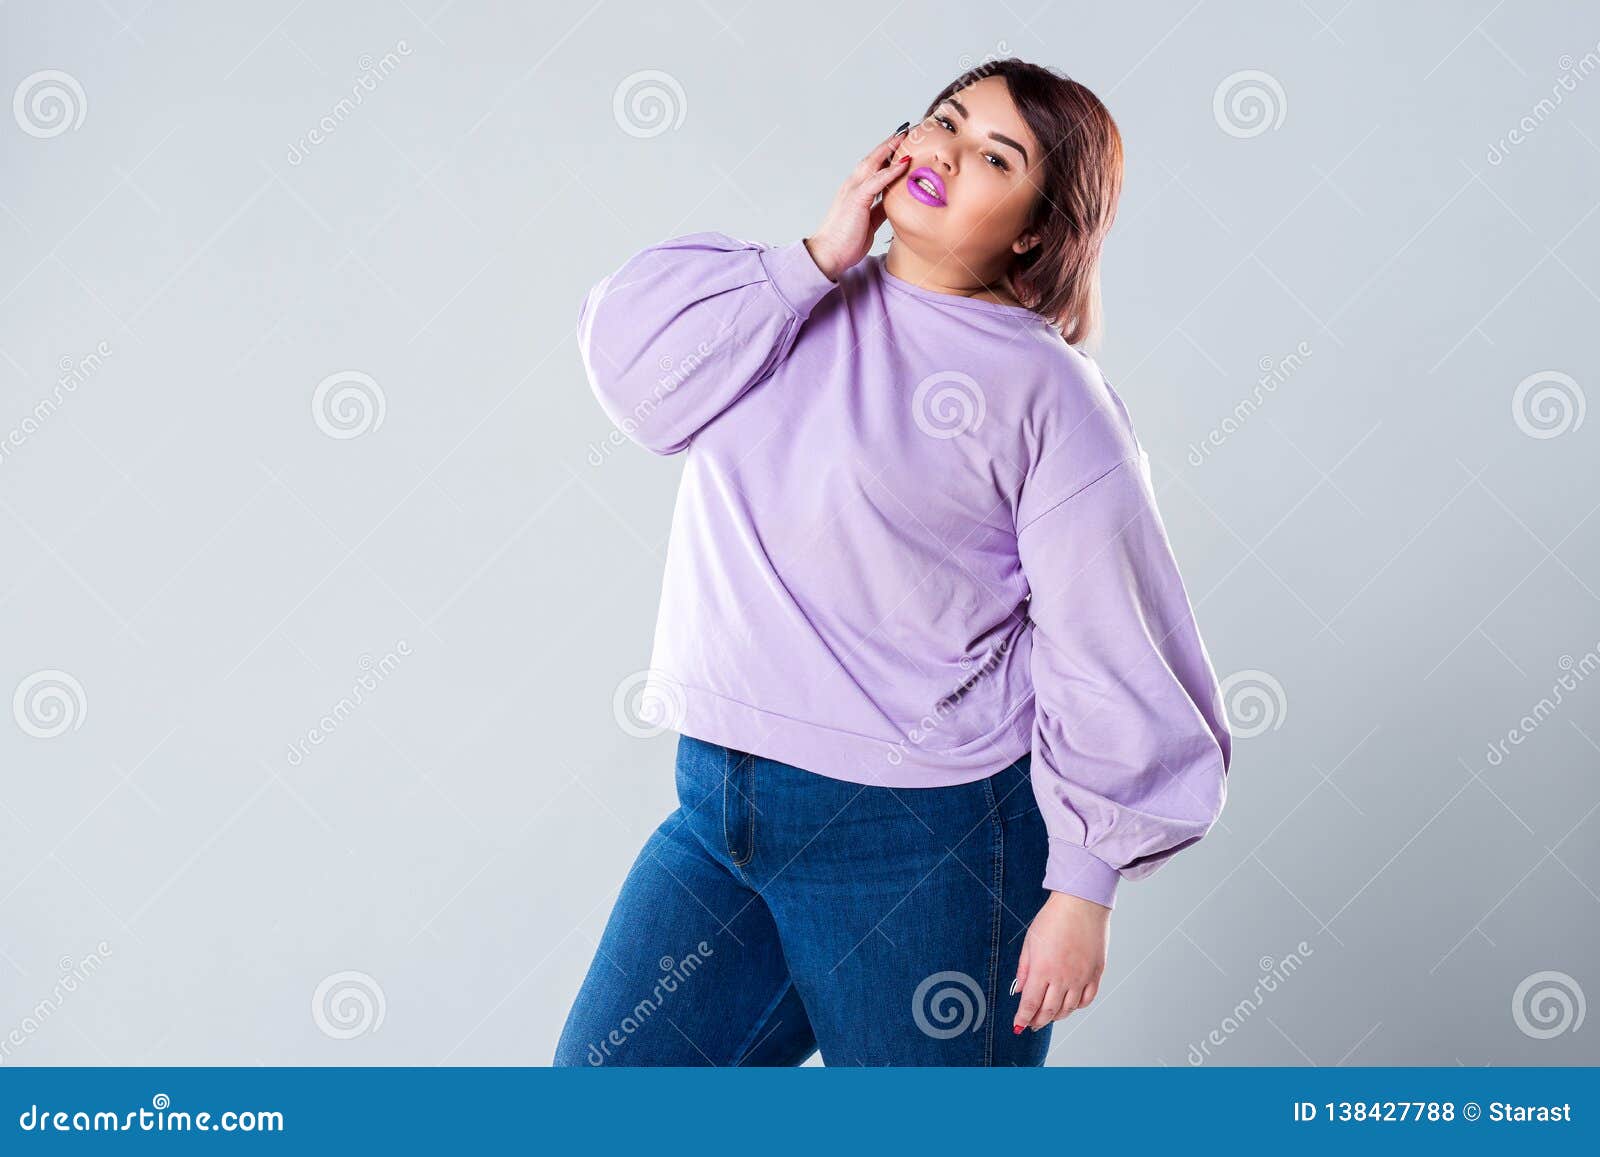 Modelo De Moda Del Tamaño Extra Grande En Casual, Mujer Gorda En Fondo Gris Foto de archivo - Imagen de 138427788